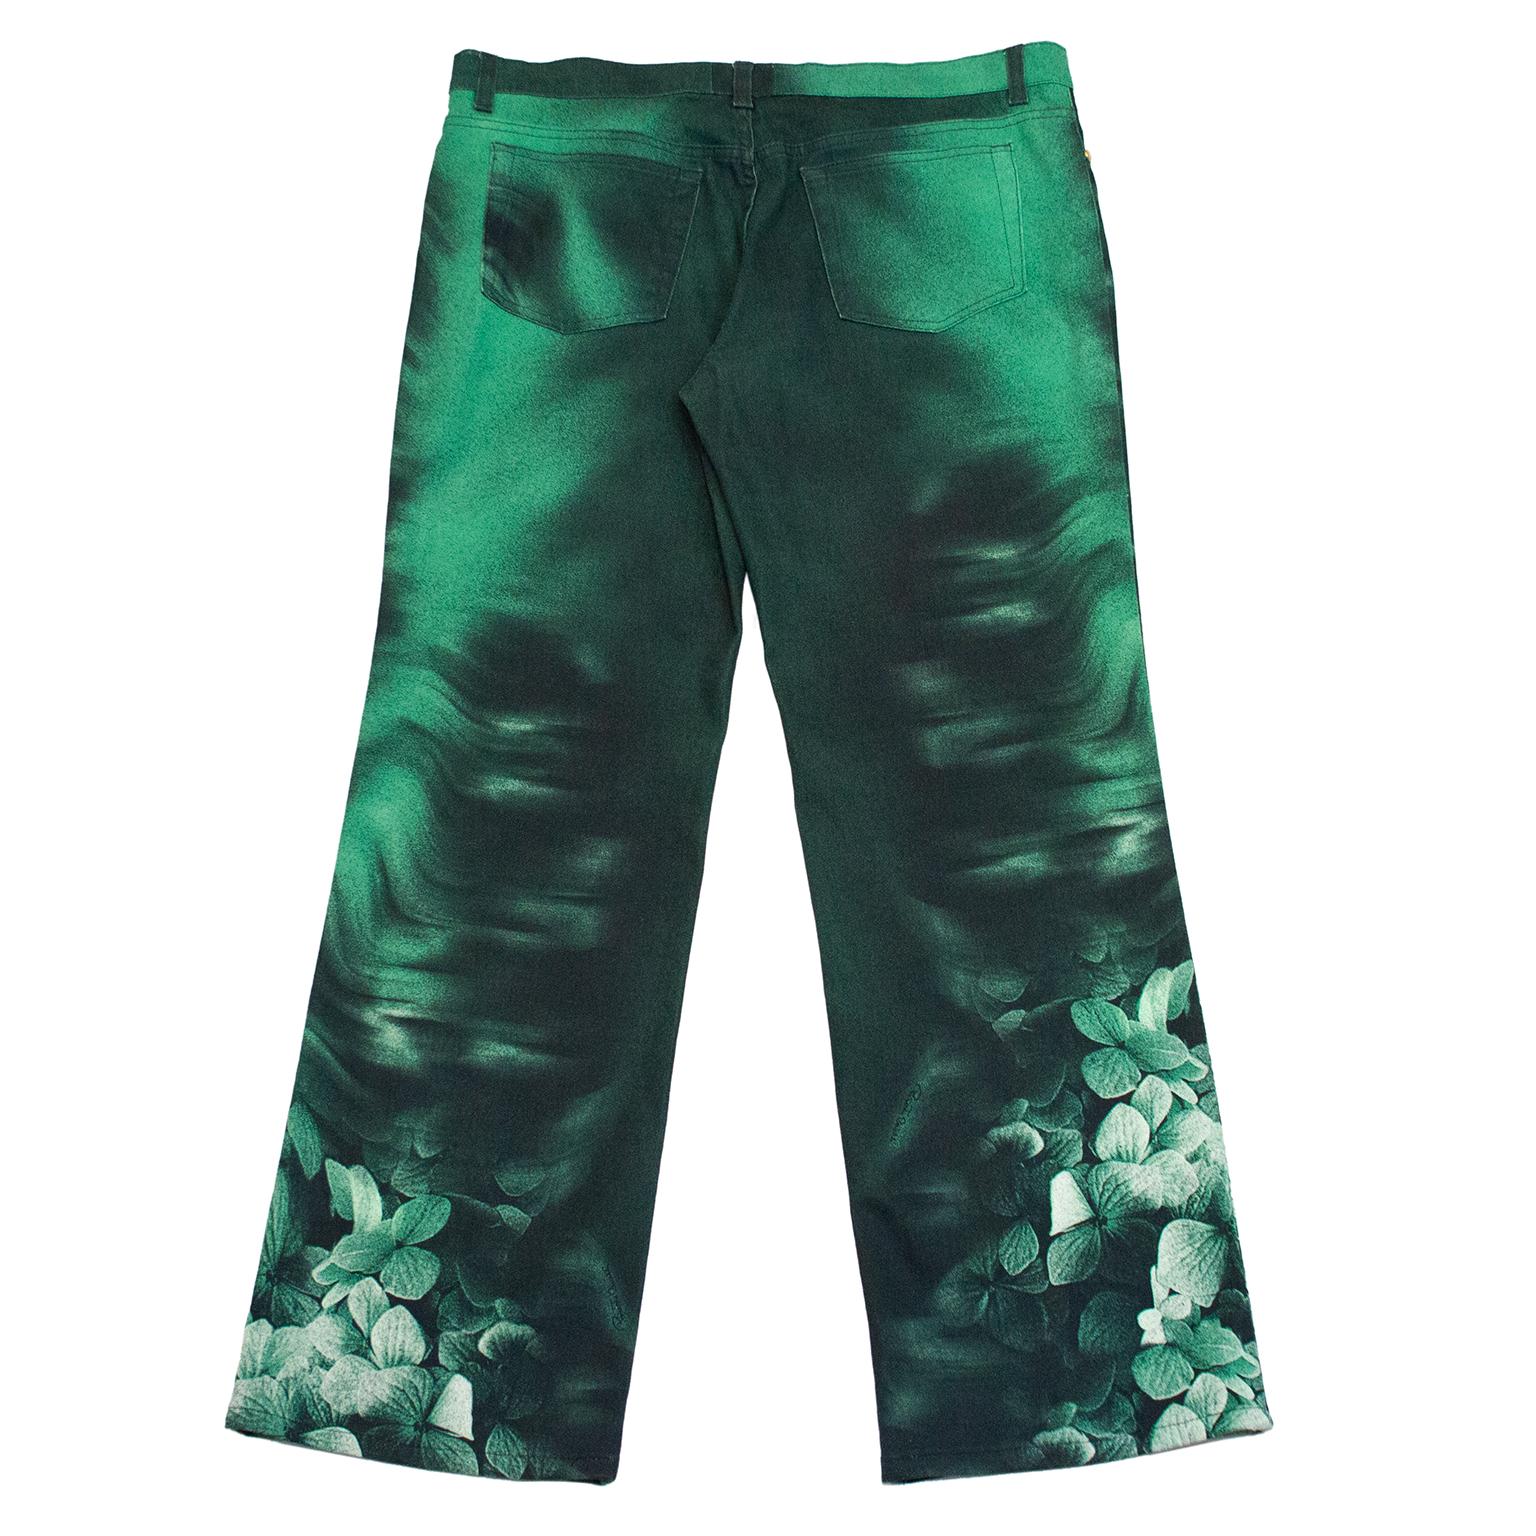 roberto Cavalli Jeans mit fünf Taschen aus den 1990er Jahren. Dunkelgrün mit durchgehend helleren grünen Partien, die wie Notizen aussehen. Grüner Blumendruck auf der unteren Hälfte der Beine. Durchgehend mit Roberto Cavalli-Signatur.